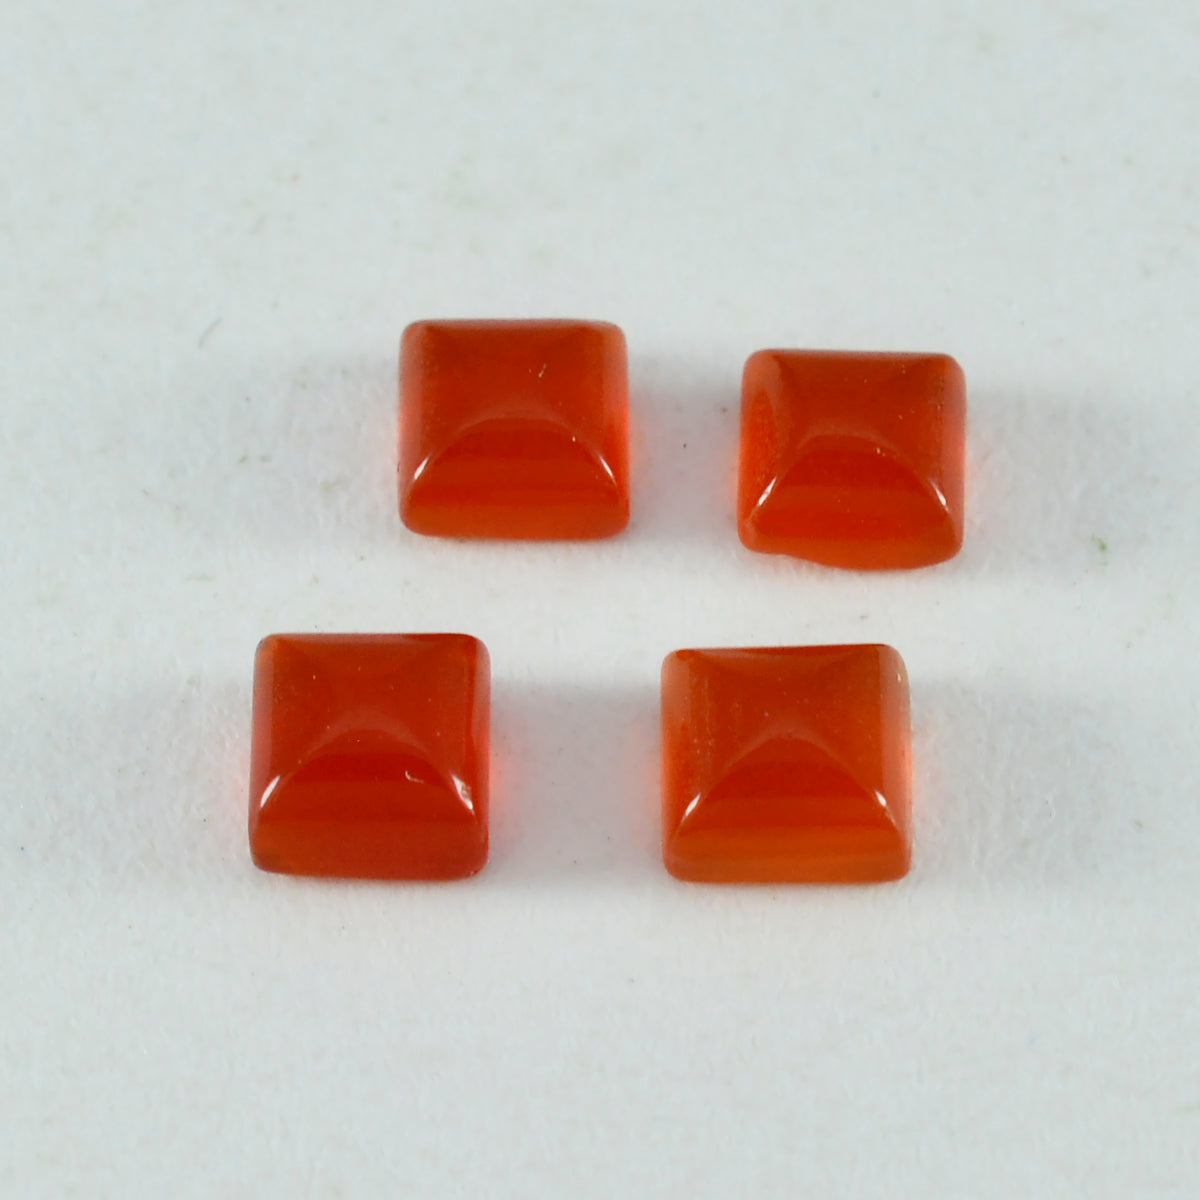 Riyogems 1 Stück roter Onyx-Cabochon, 10 x 10 mm, quadratische Form, schöner Qualitäts-Edelstein